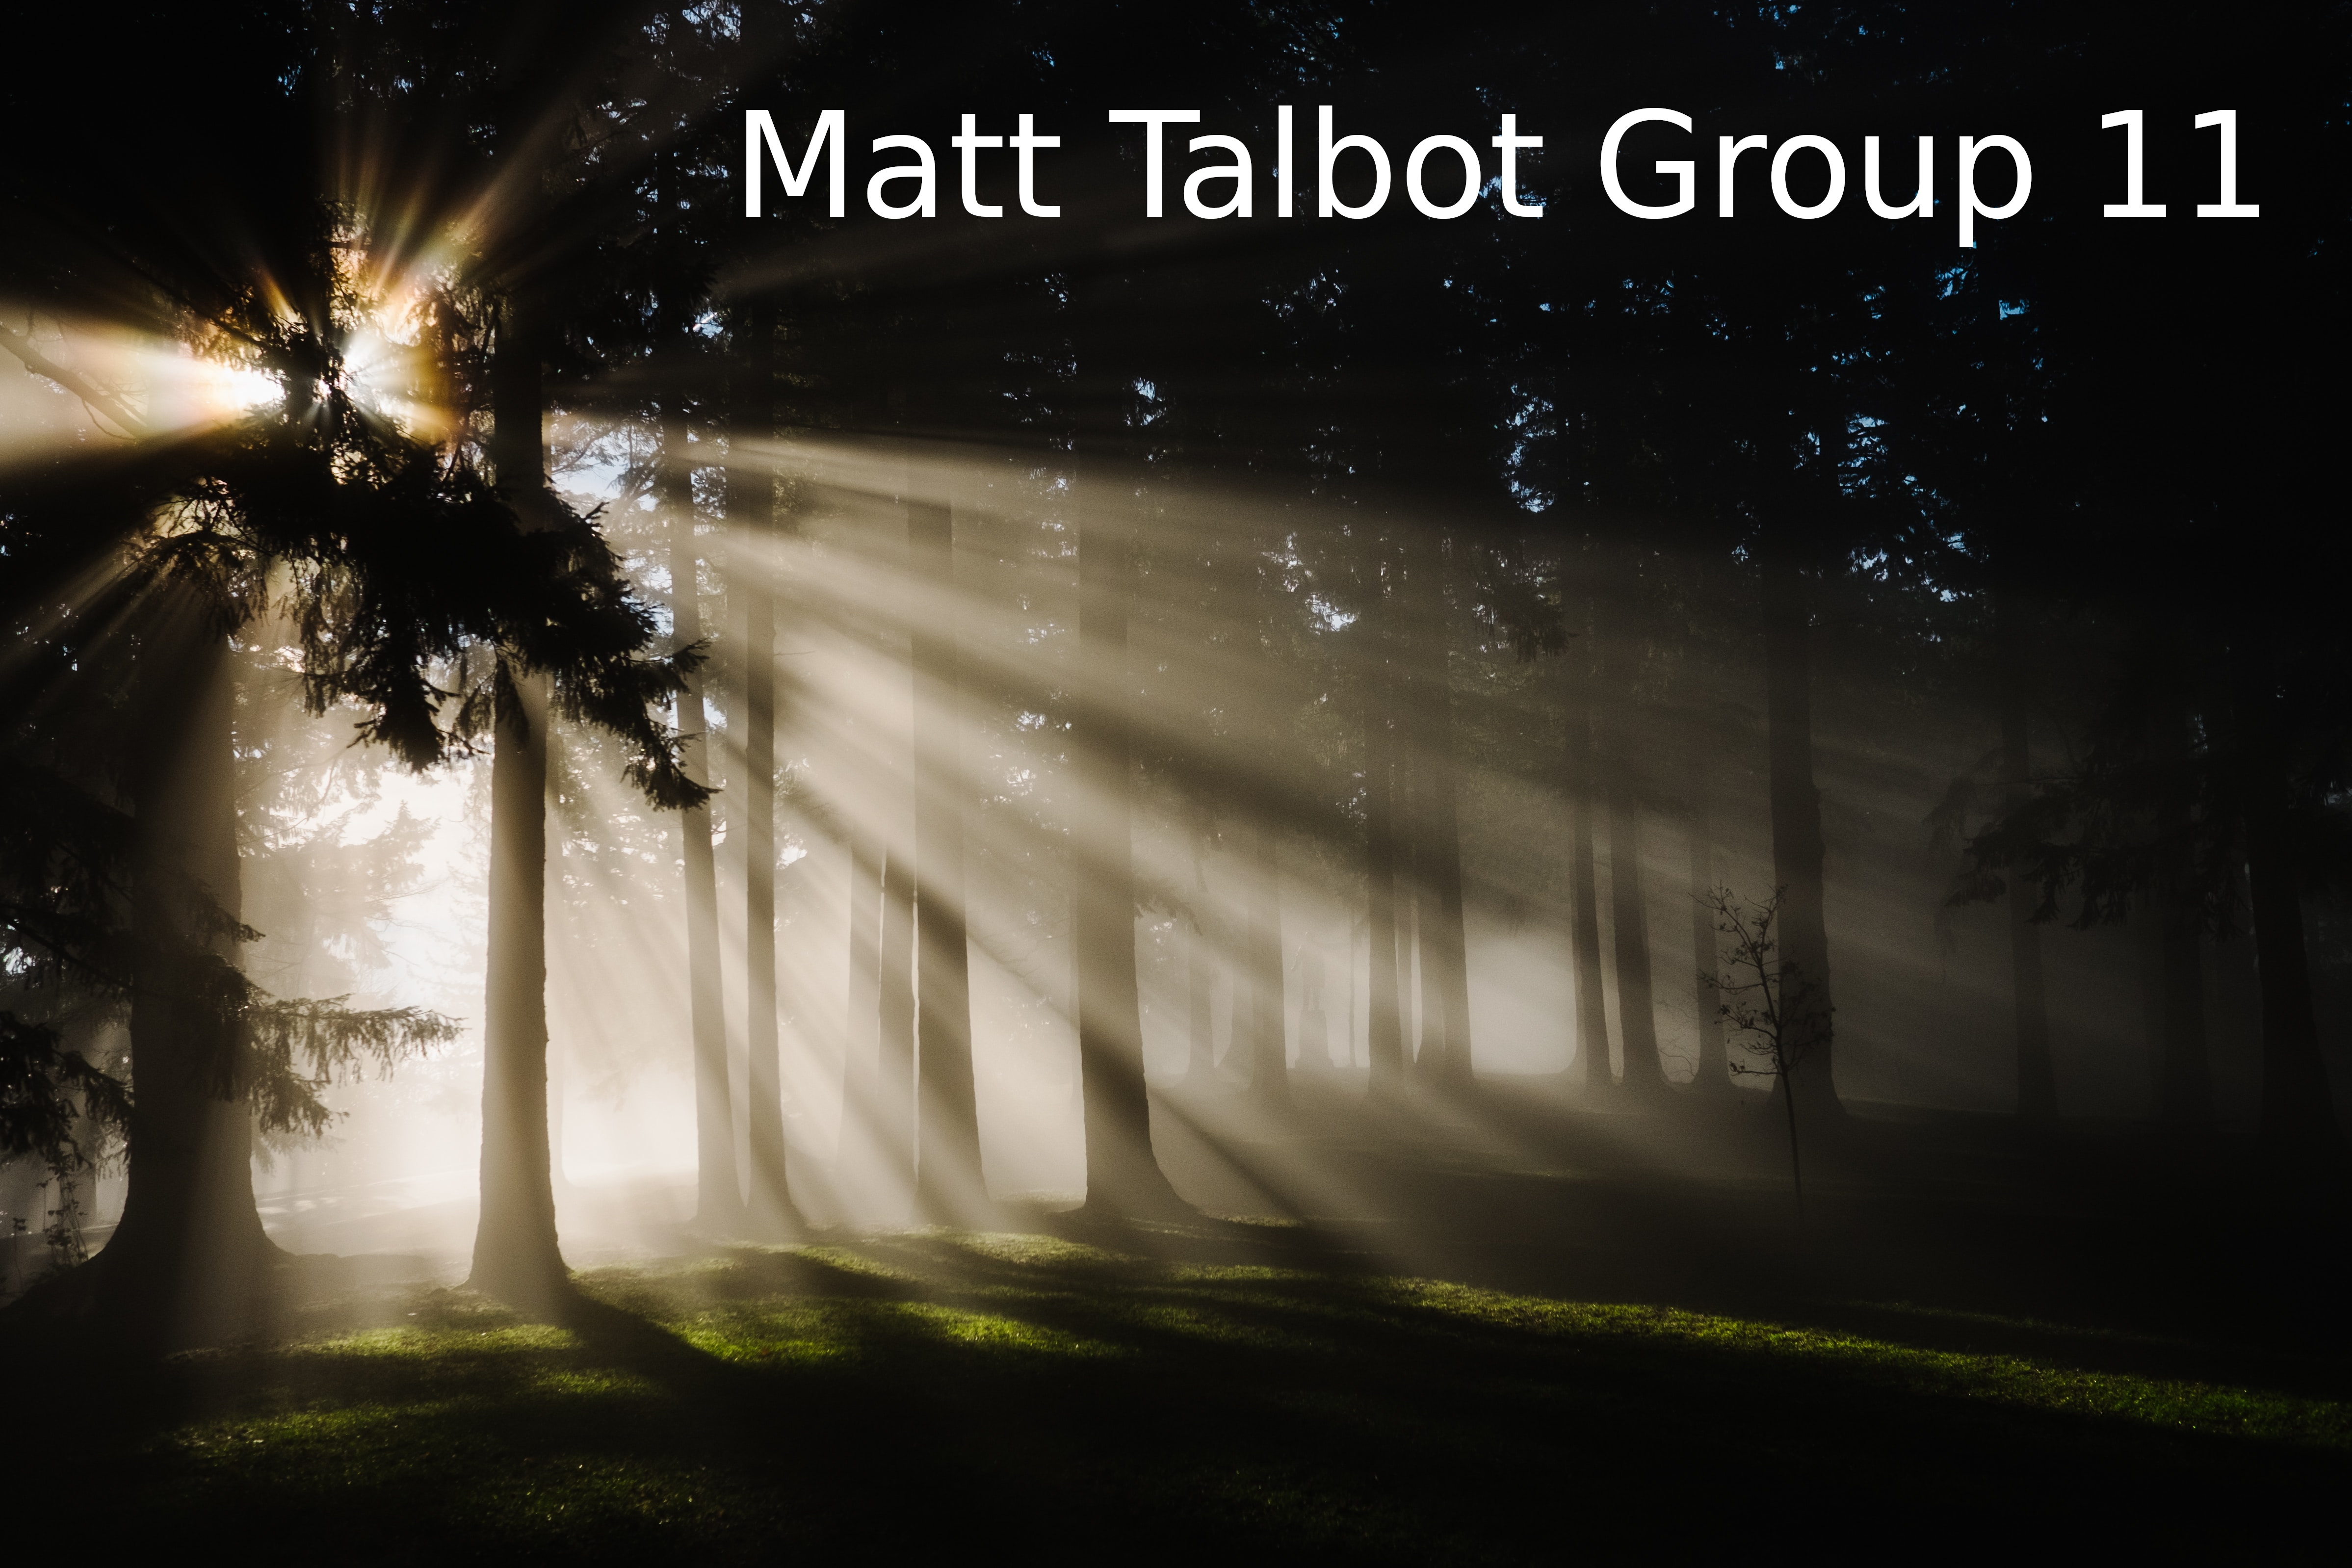 Matt Talbot Group 11